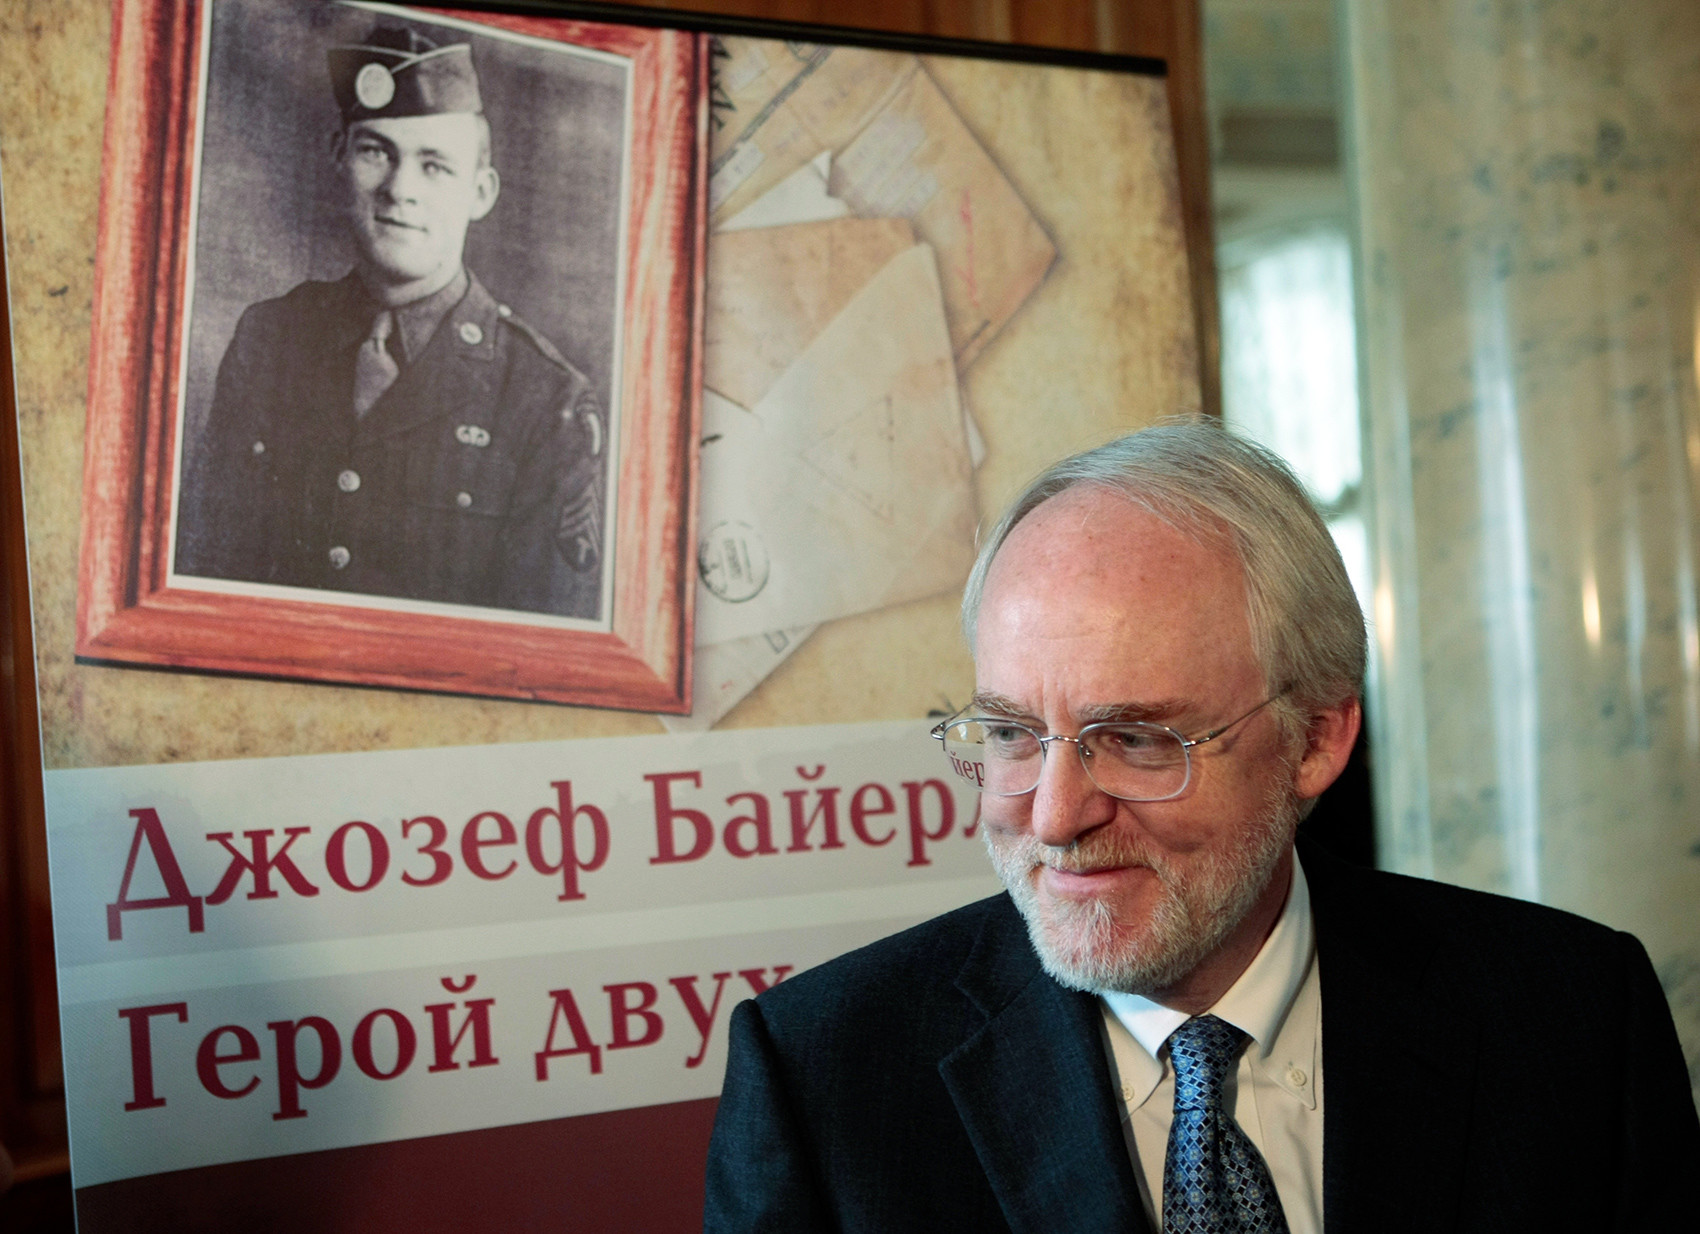 Джон Байерли, один из сыновей Джозефа Байерли, стал дипломатом-специалистом по России и служил в 2008-2012 гг. послом США в Москве. 